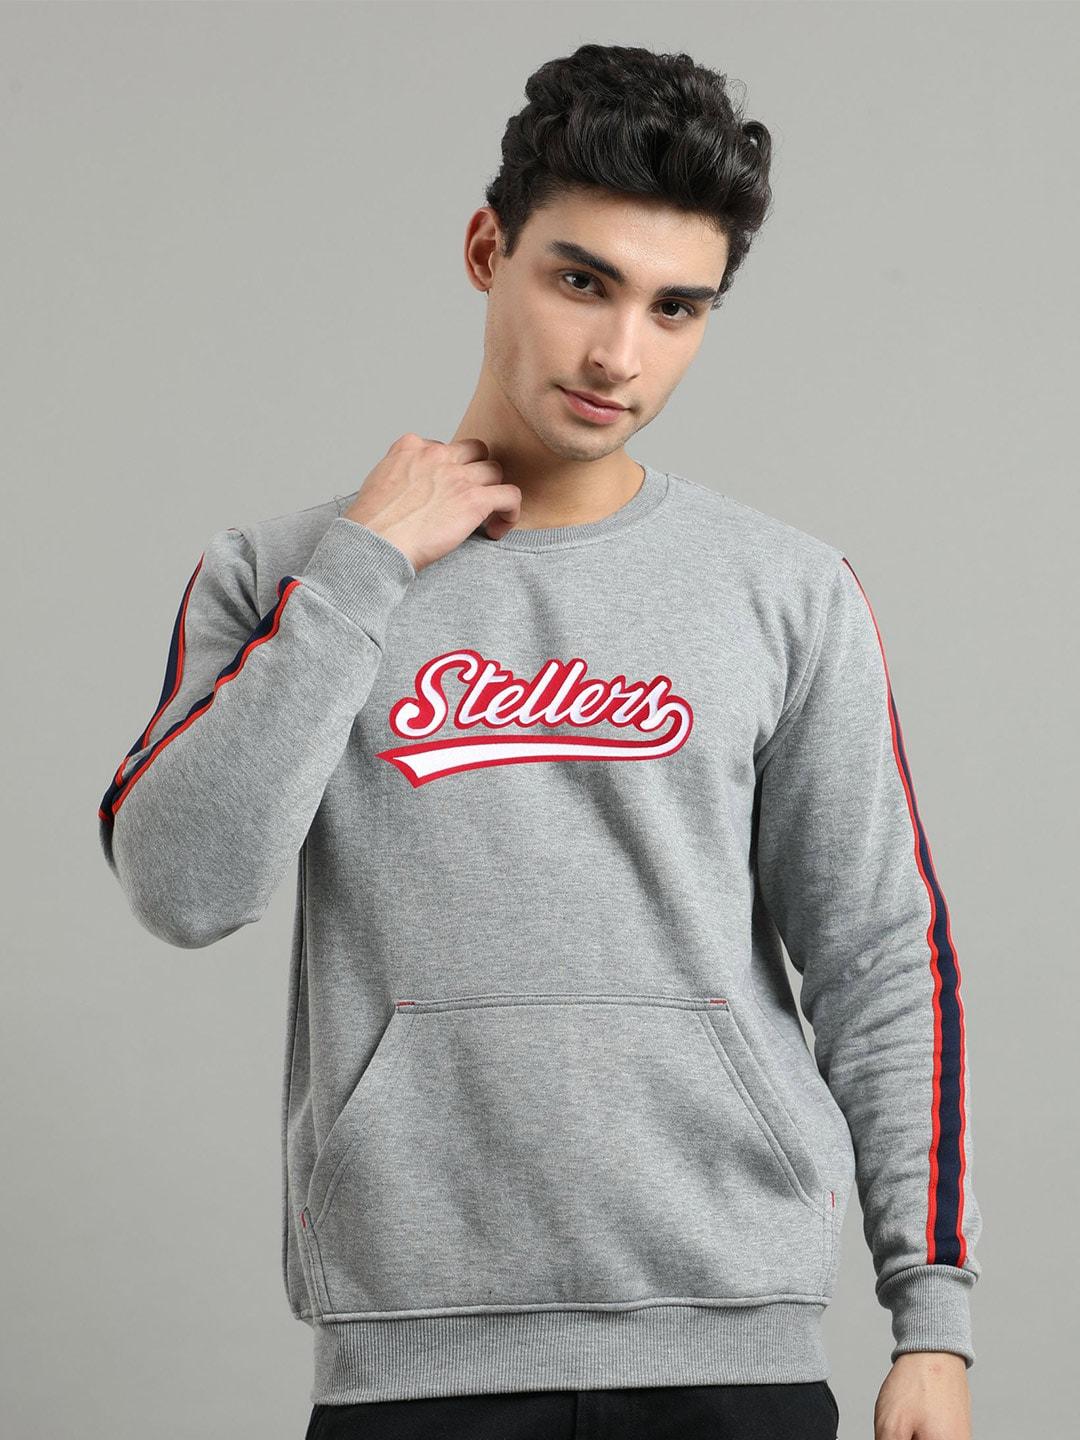 stellers typography printed sweatshirt